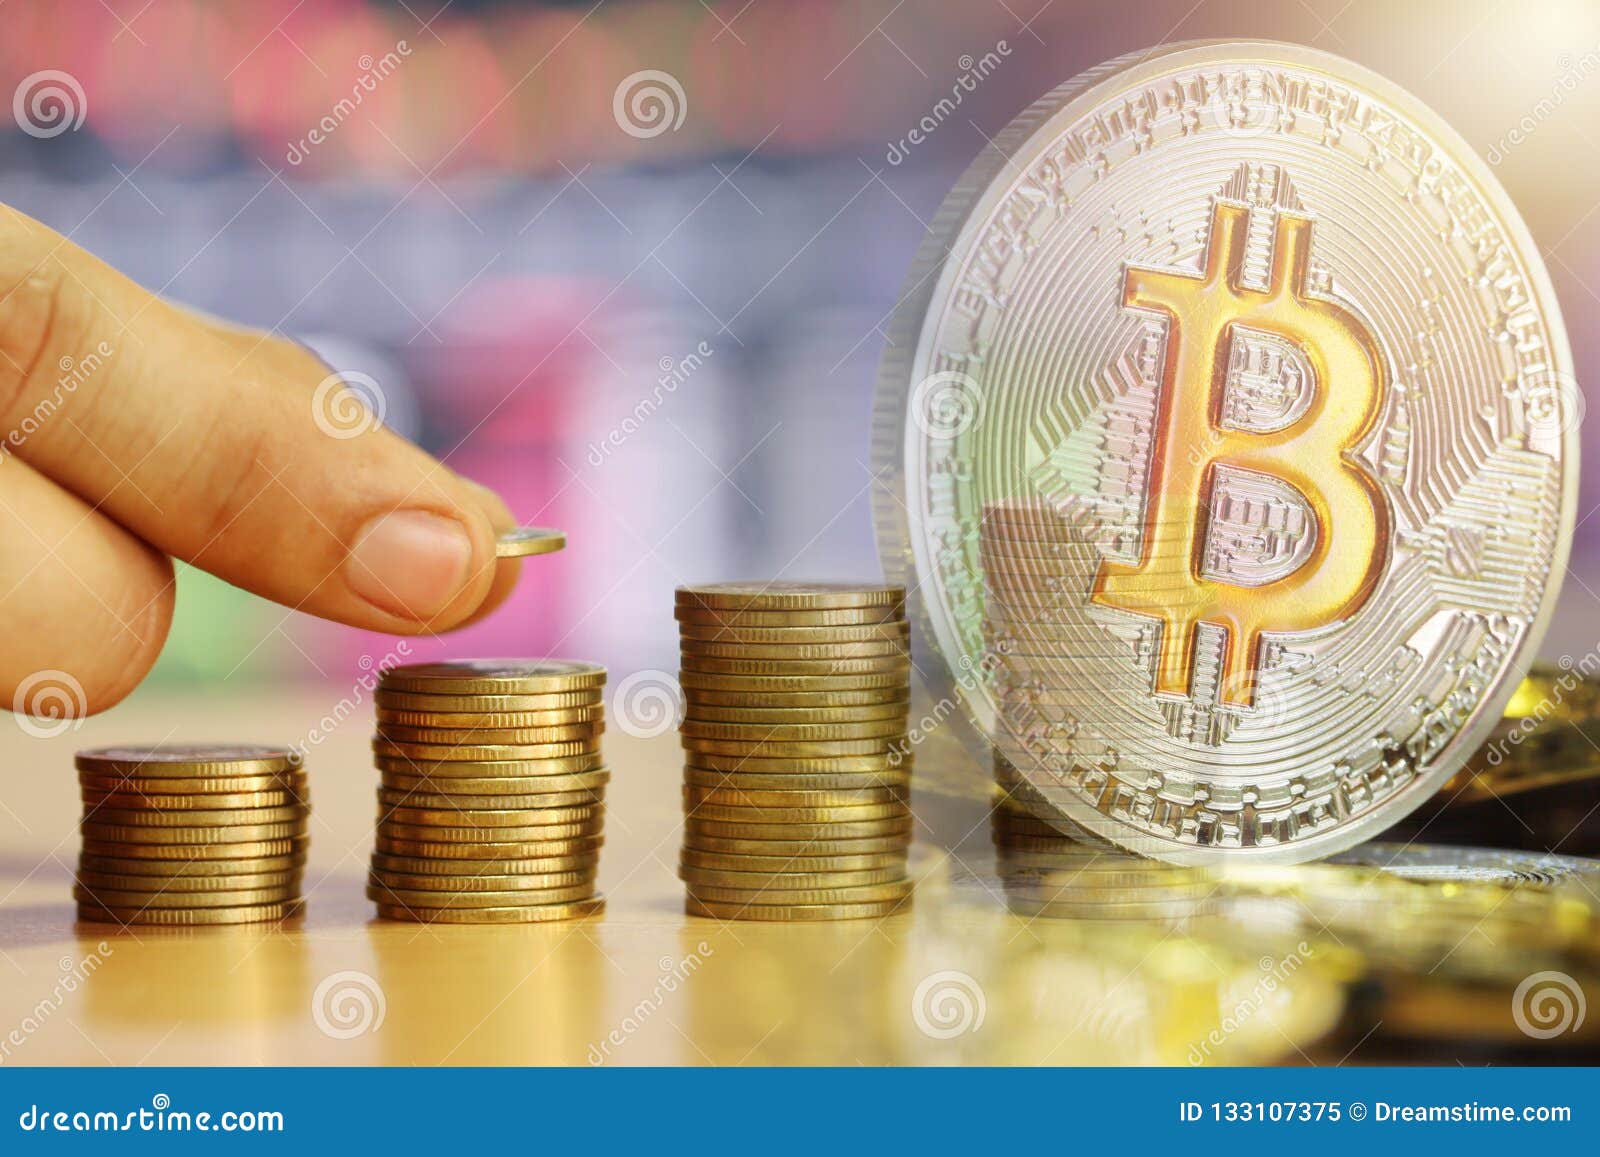 double coin bitcoin